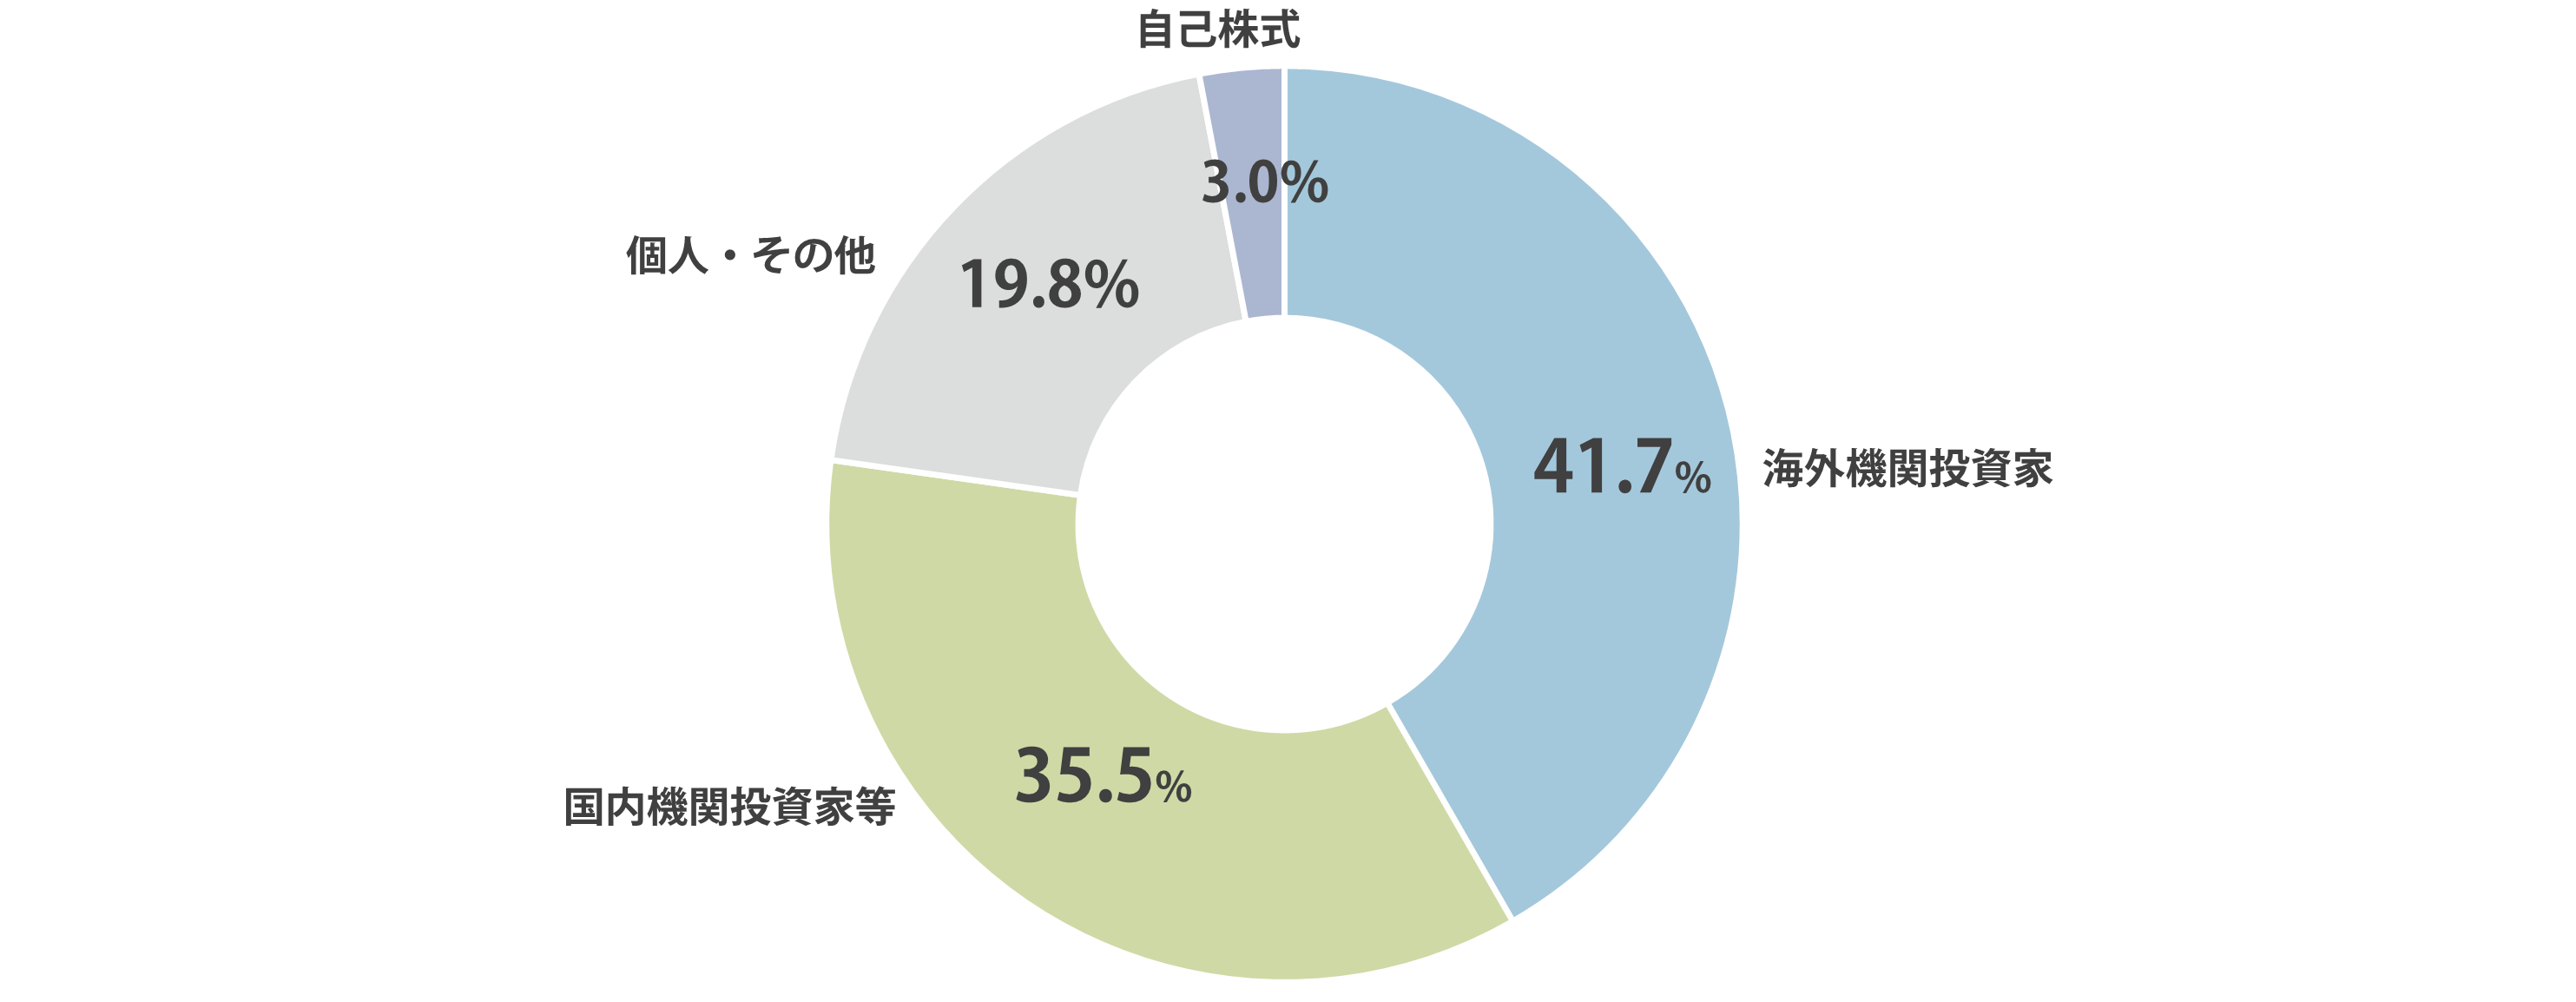 所有者別株式分布状況円グラフ